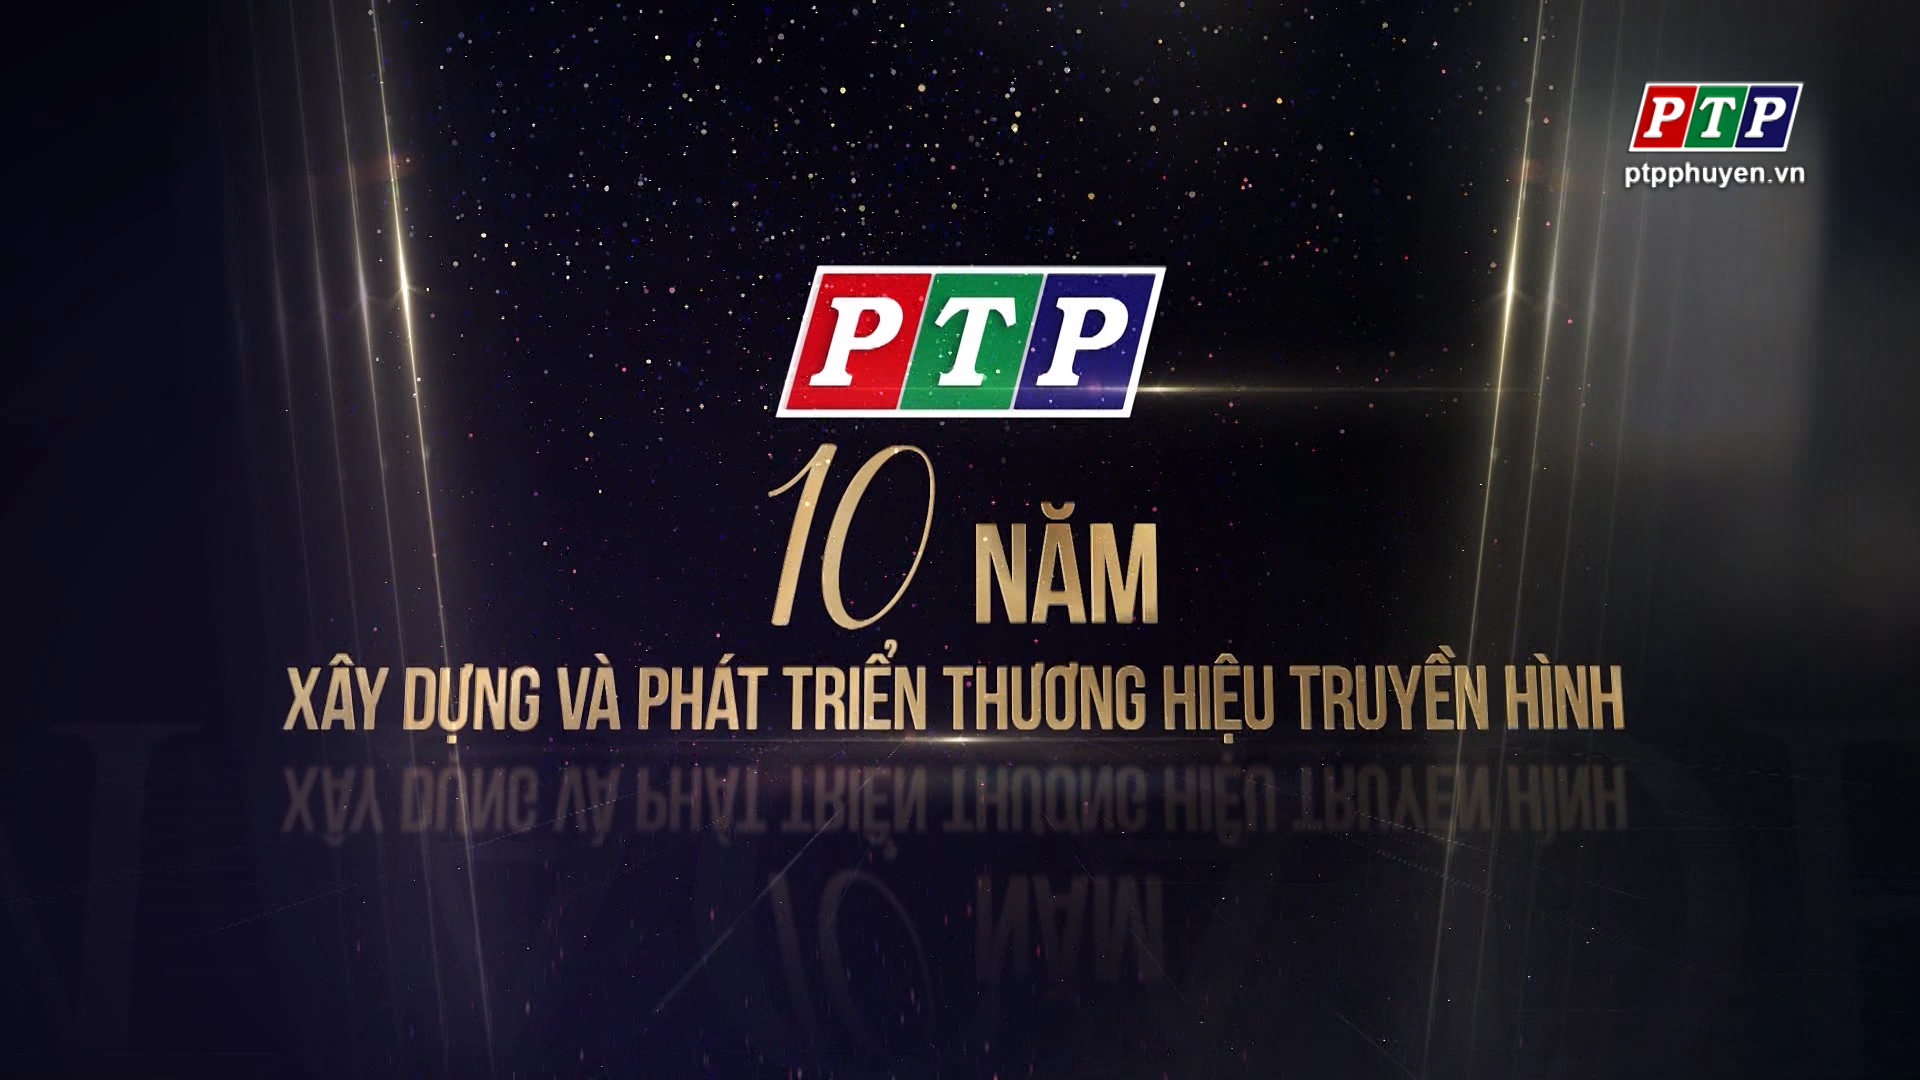 PTP_ 10 năm xây dựng và  phát triển thương hiệu truyền hình